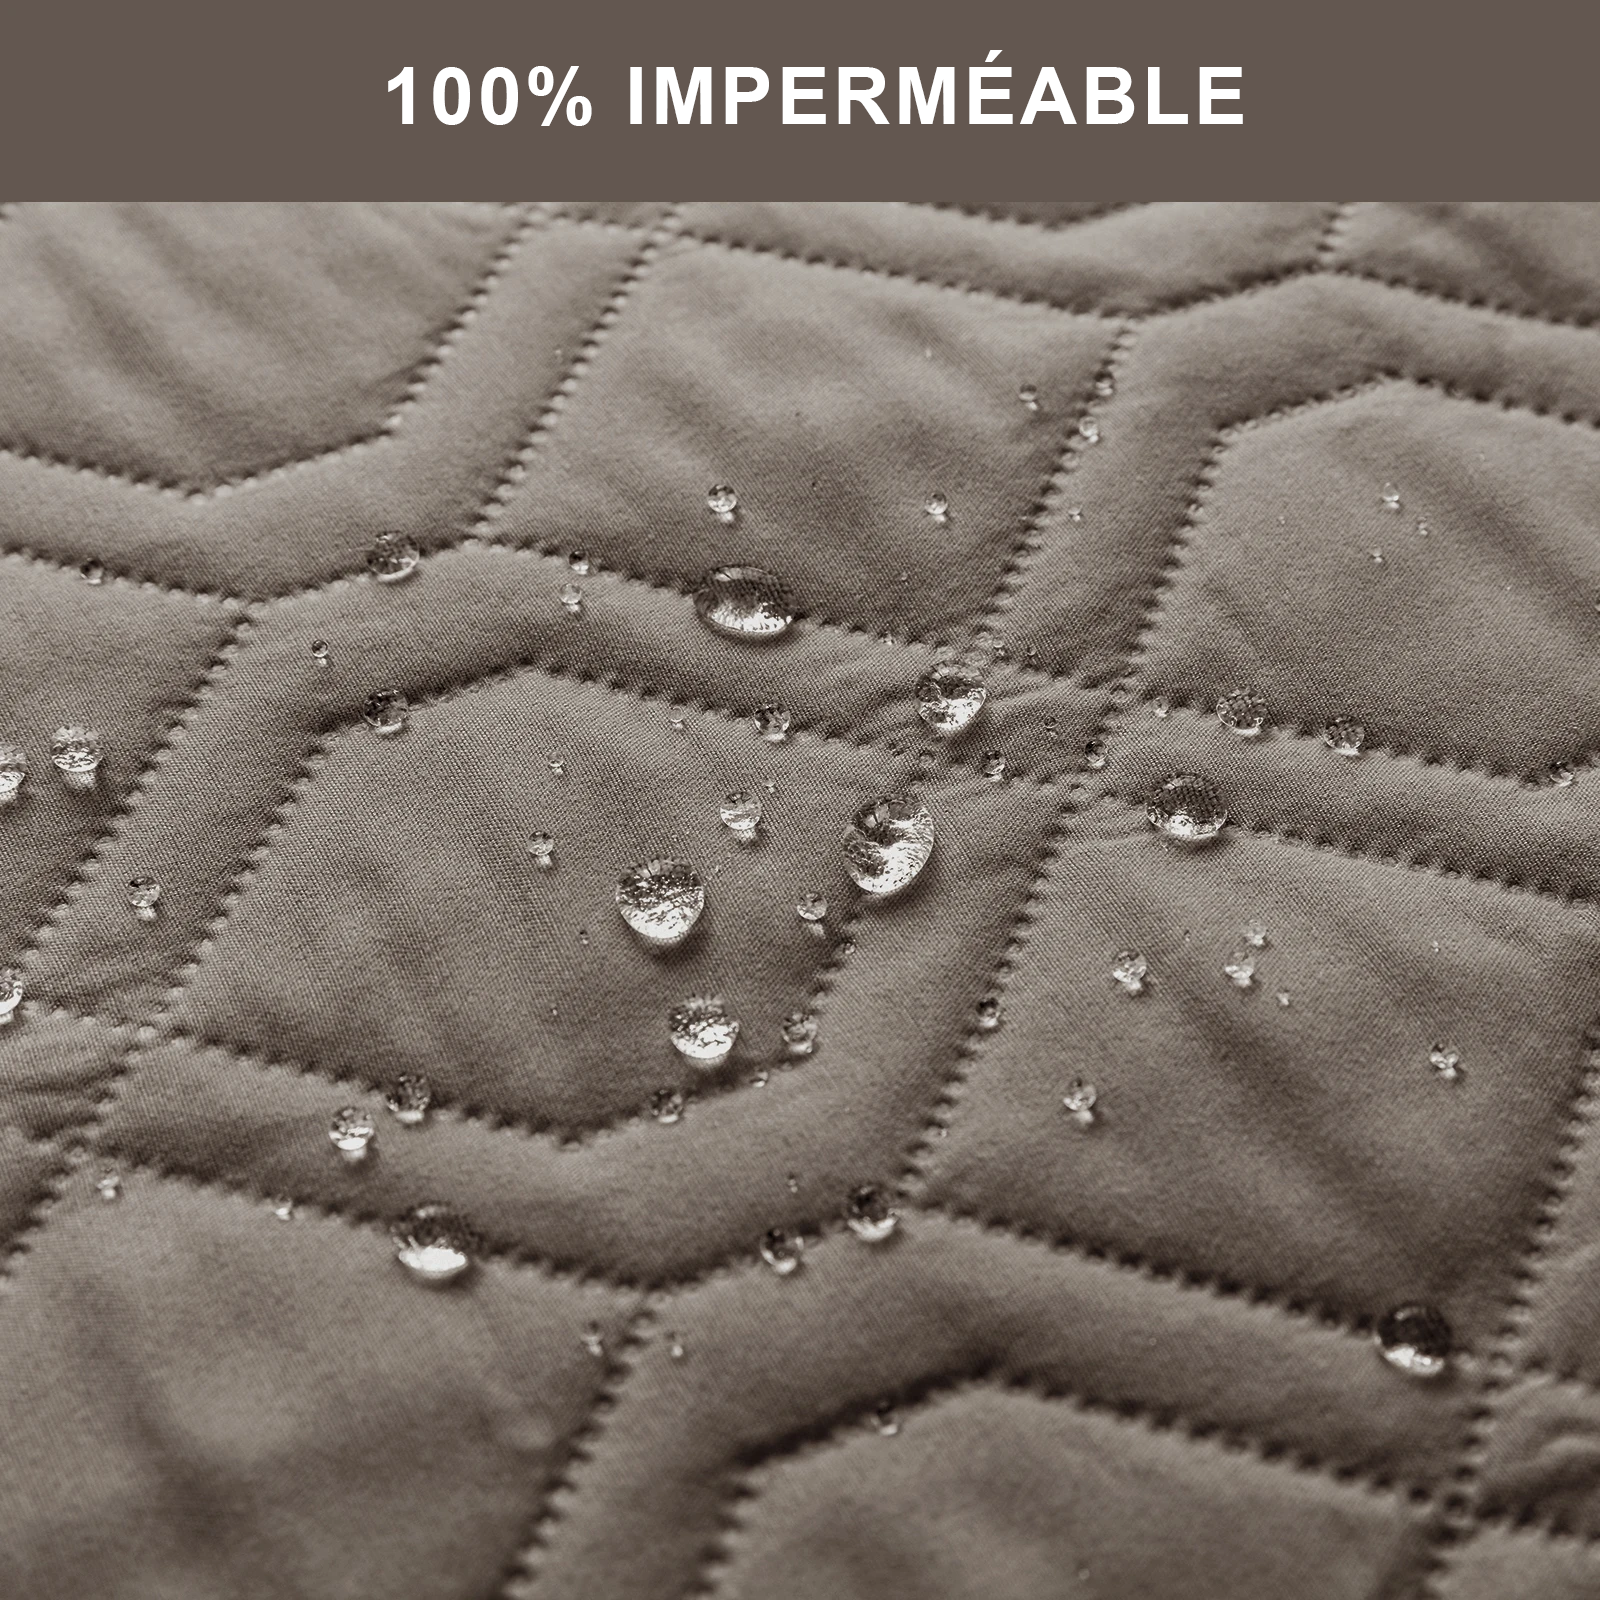 tissu 100% imperméble